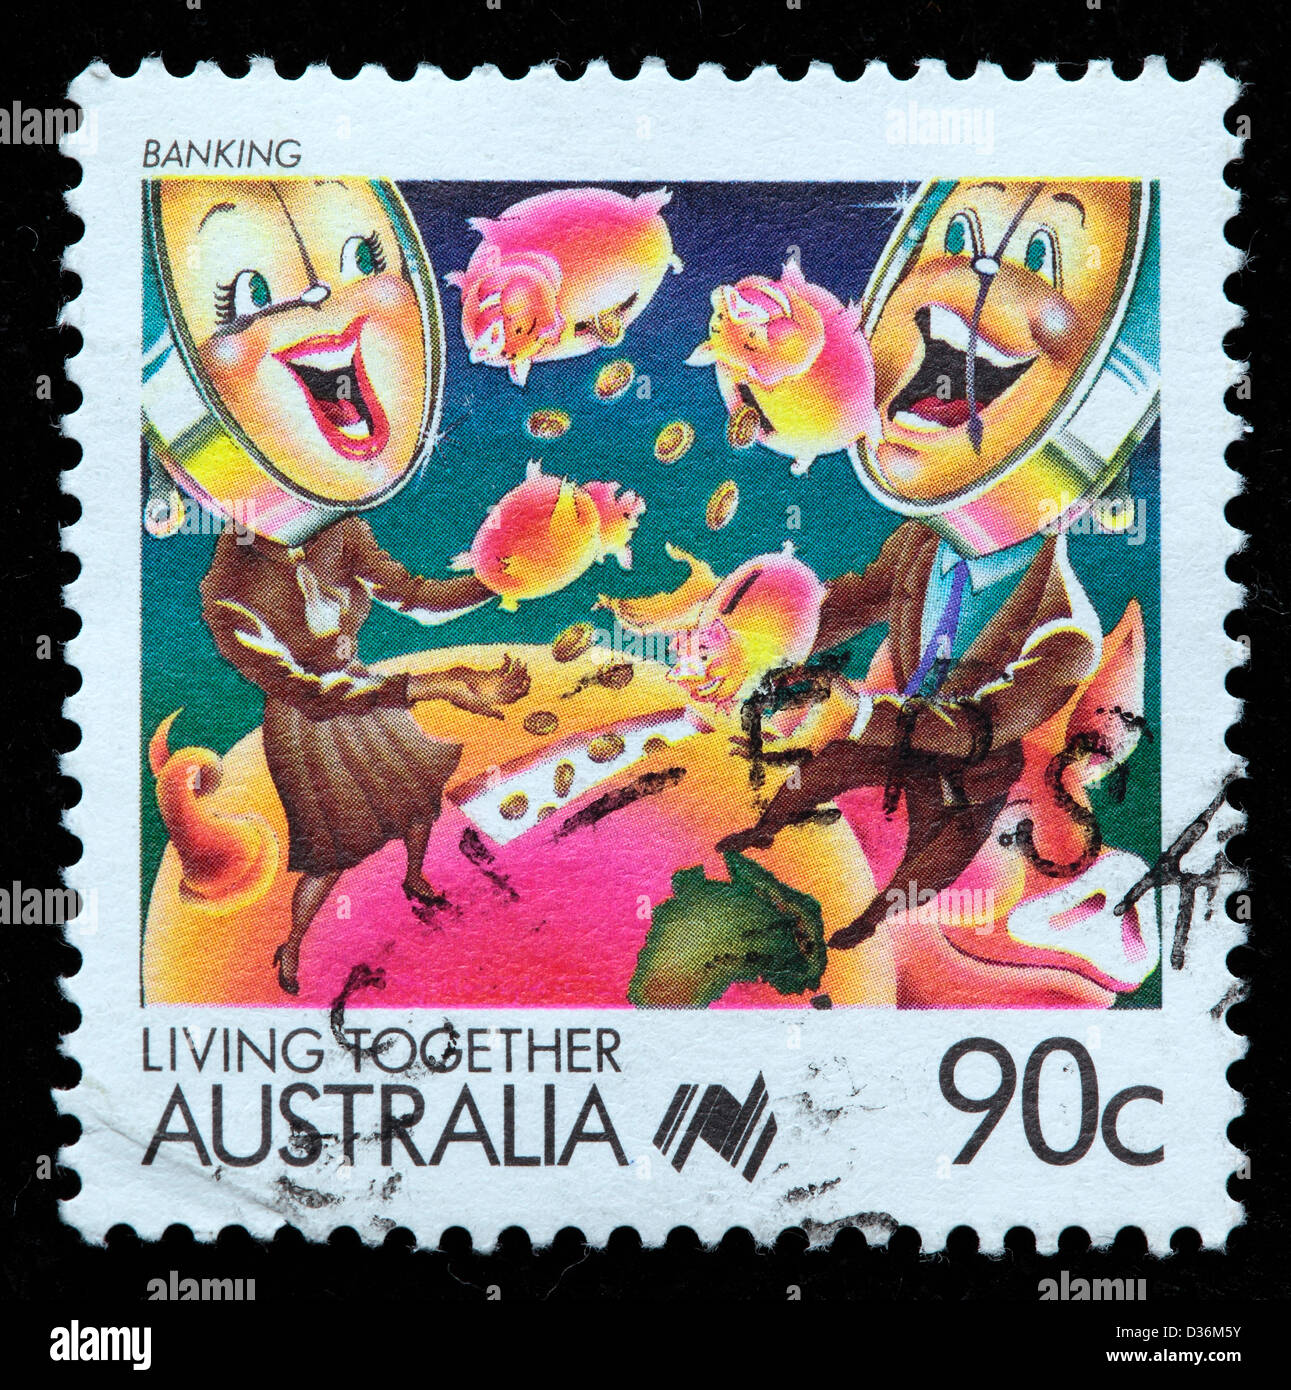 Banken, Zusammenleben, Briefmarke, Australien, 1988 Stockfoto